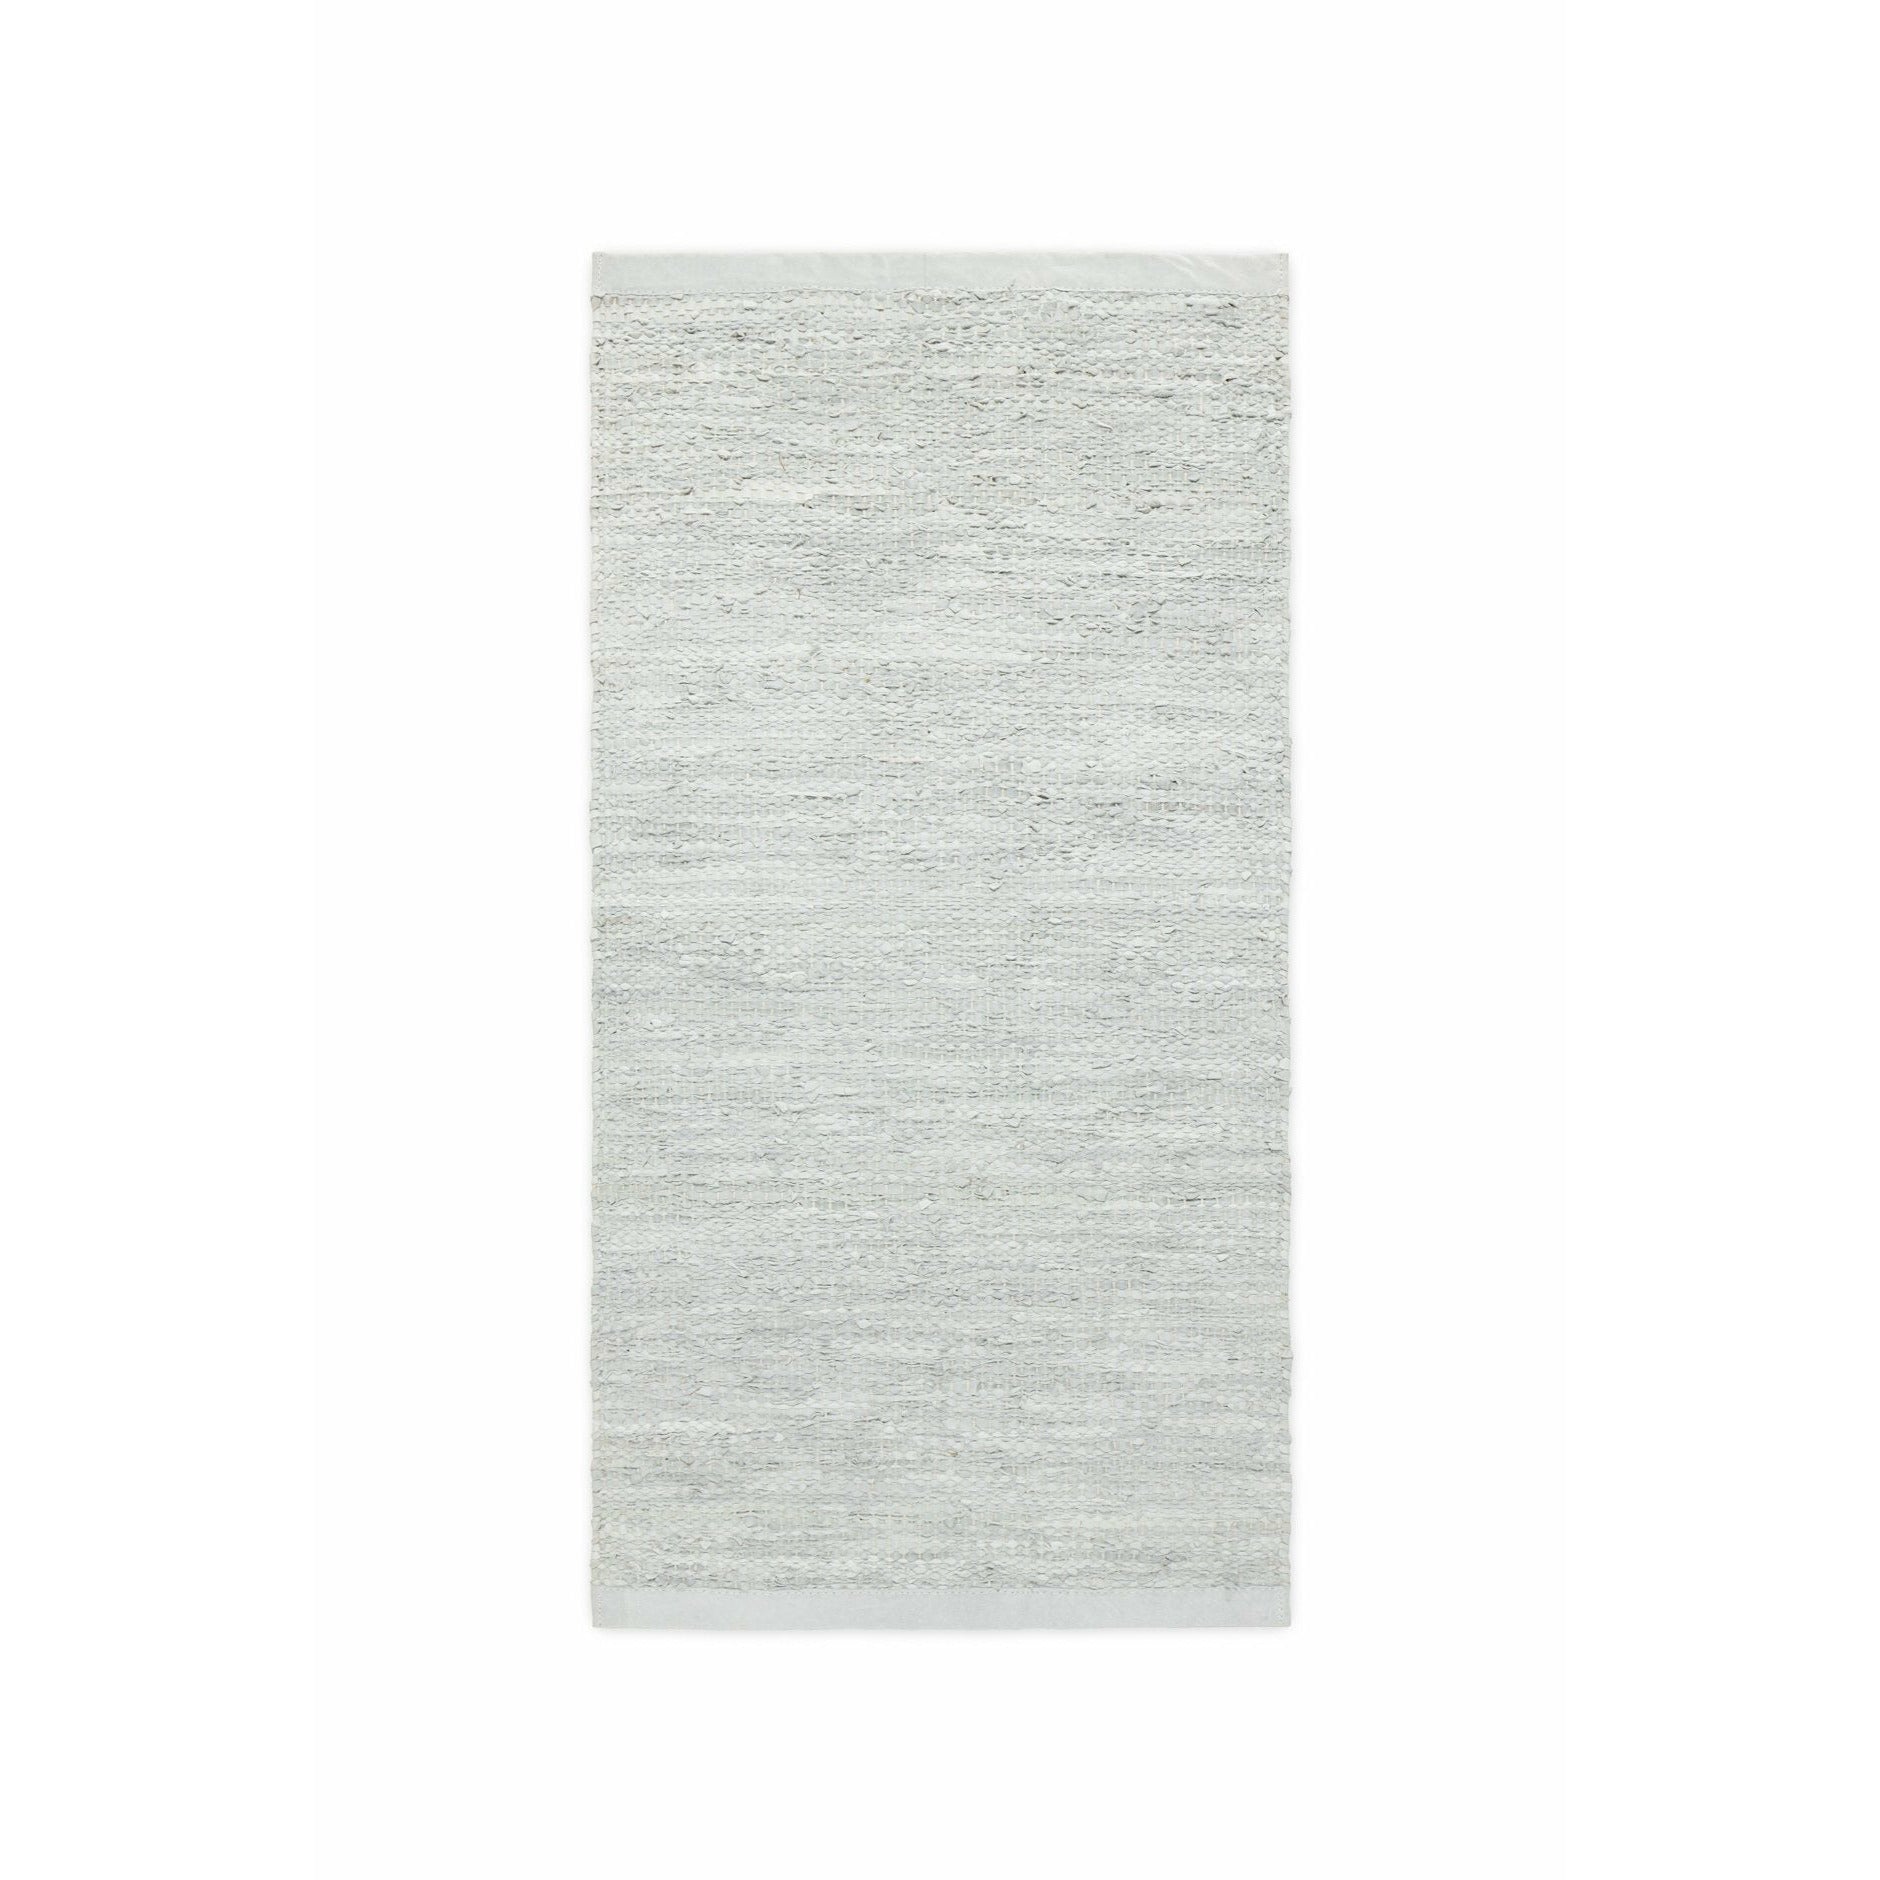 Rug Solid Leather Teppich Limestone, 60 x 90 cm-Teppiche-Rug Solid-5711655101046-10104-RUG-inwohn